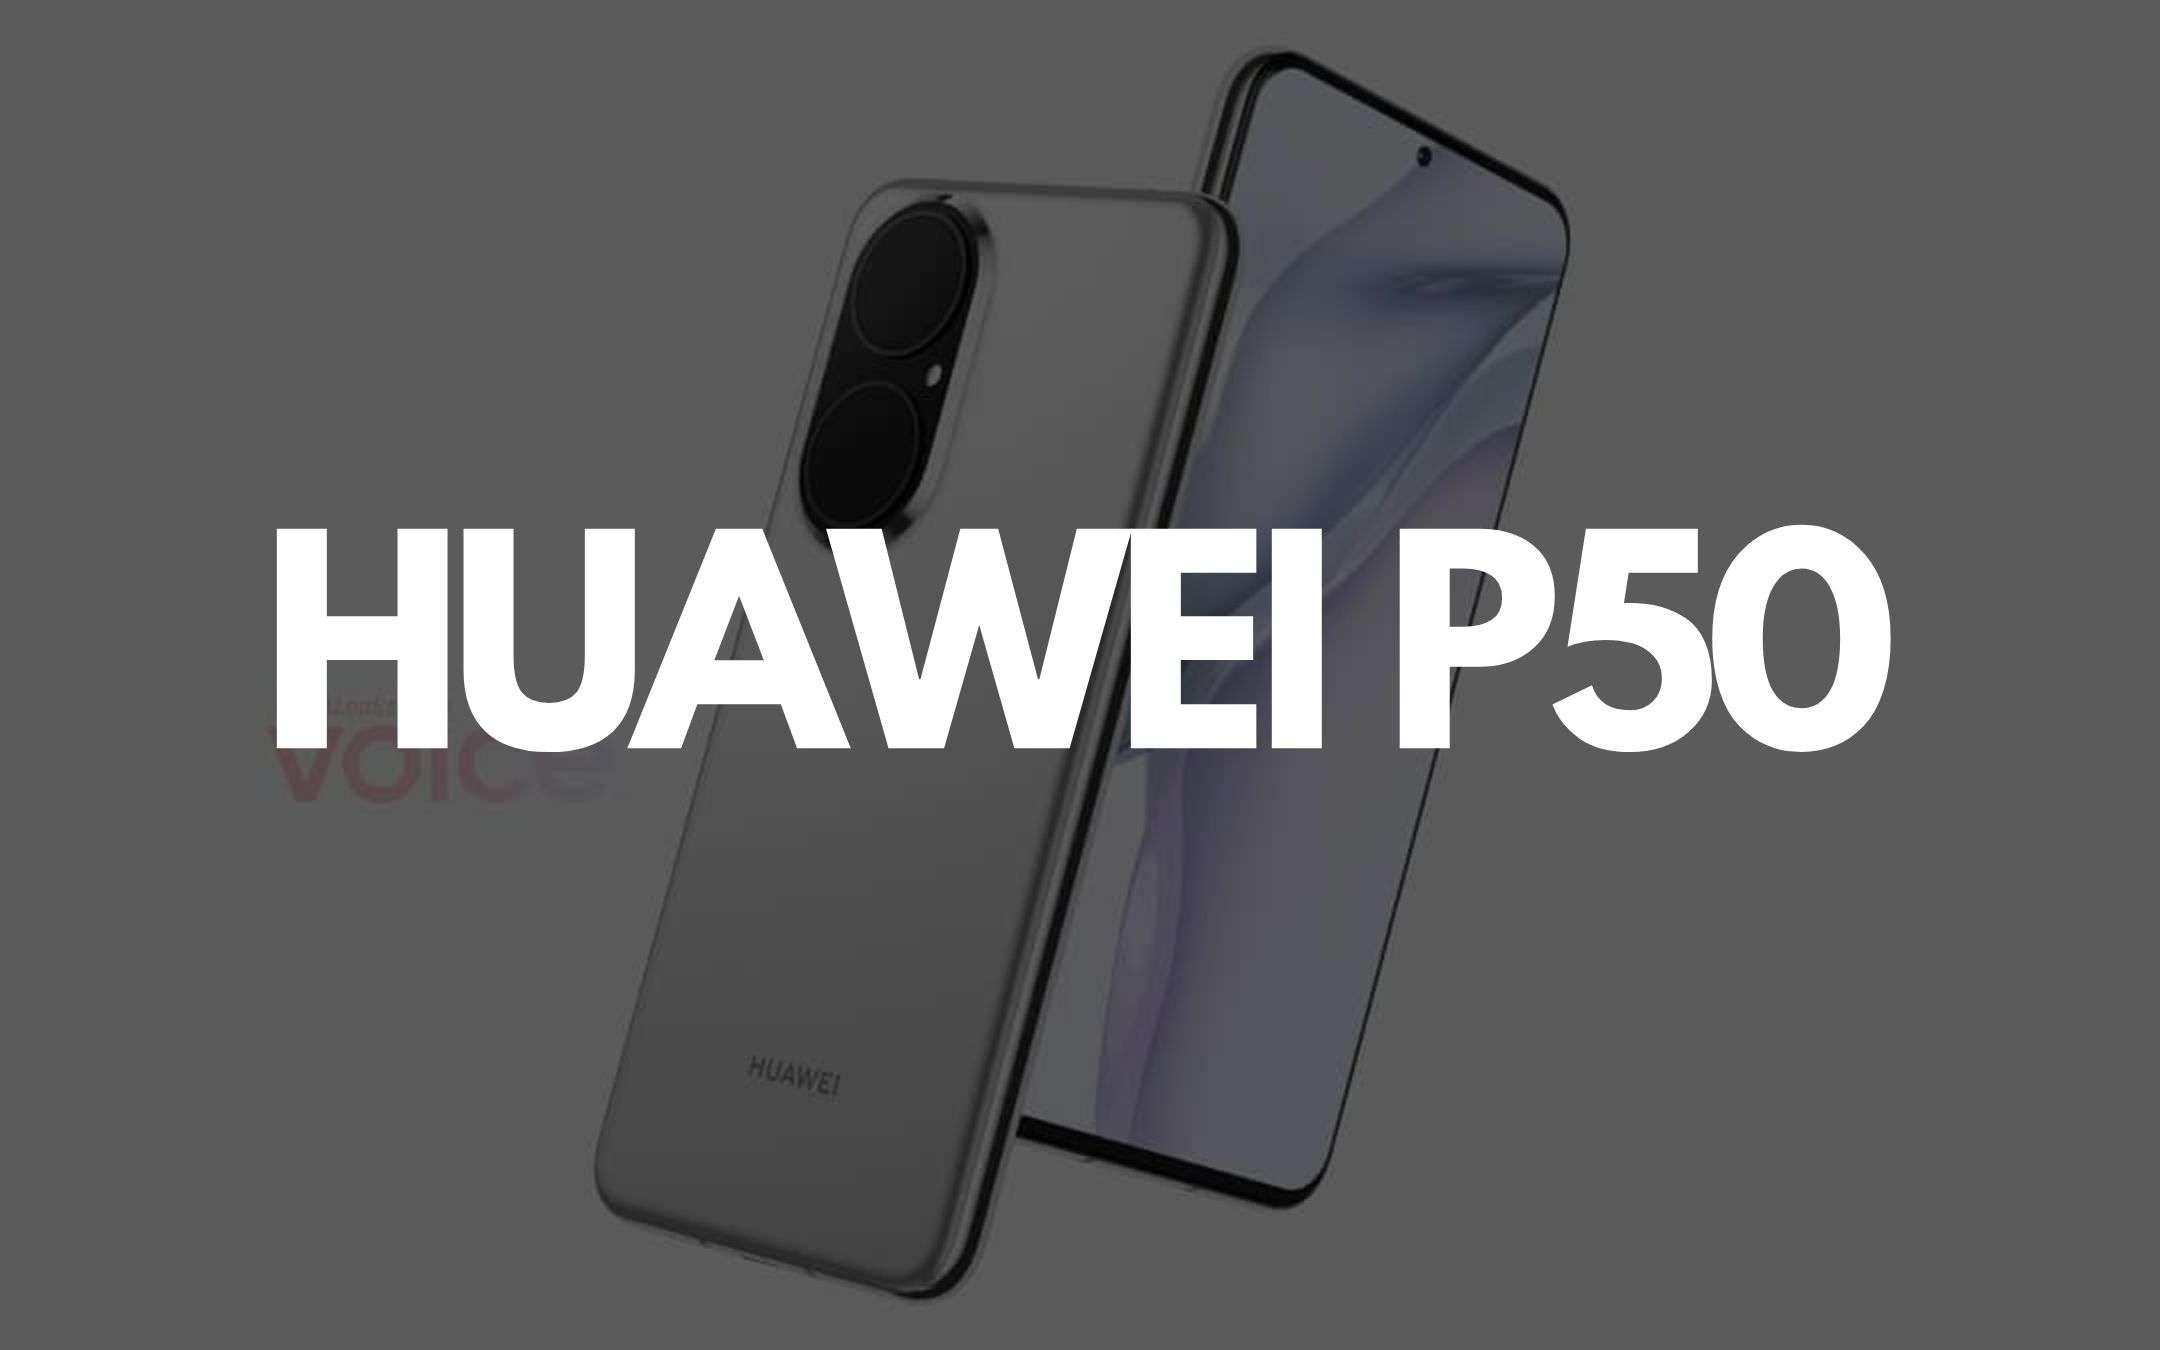 Huawei P50: come scatta le foto il nuovo flagship?